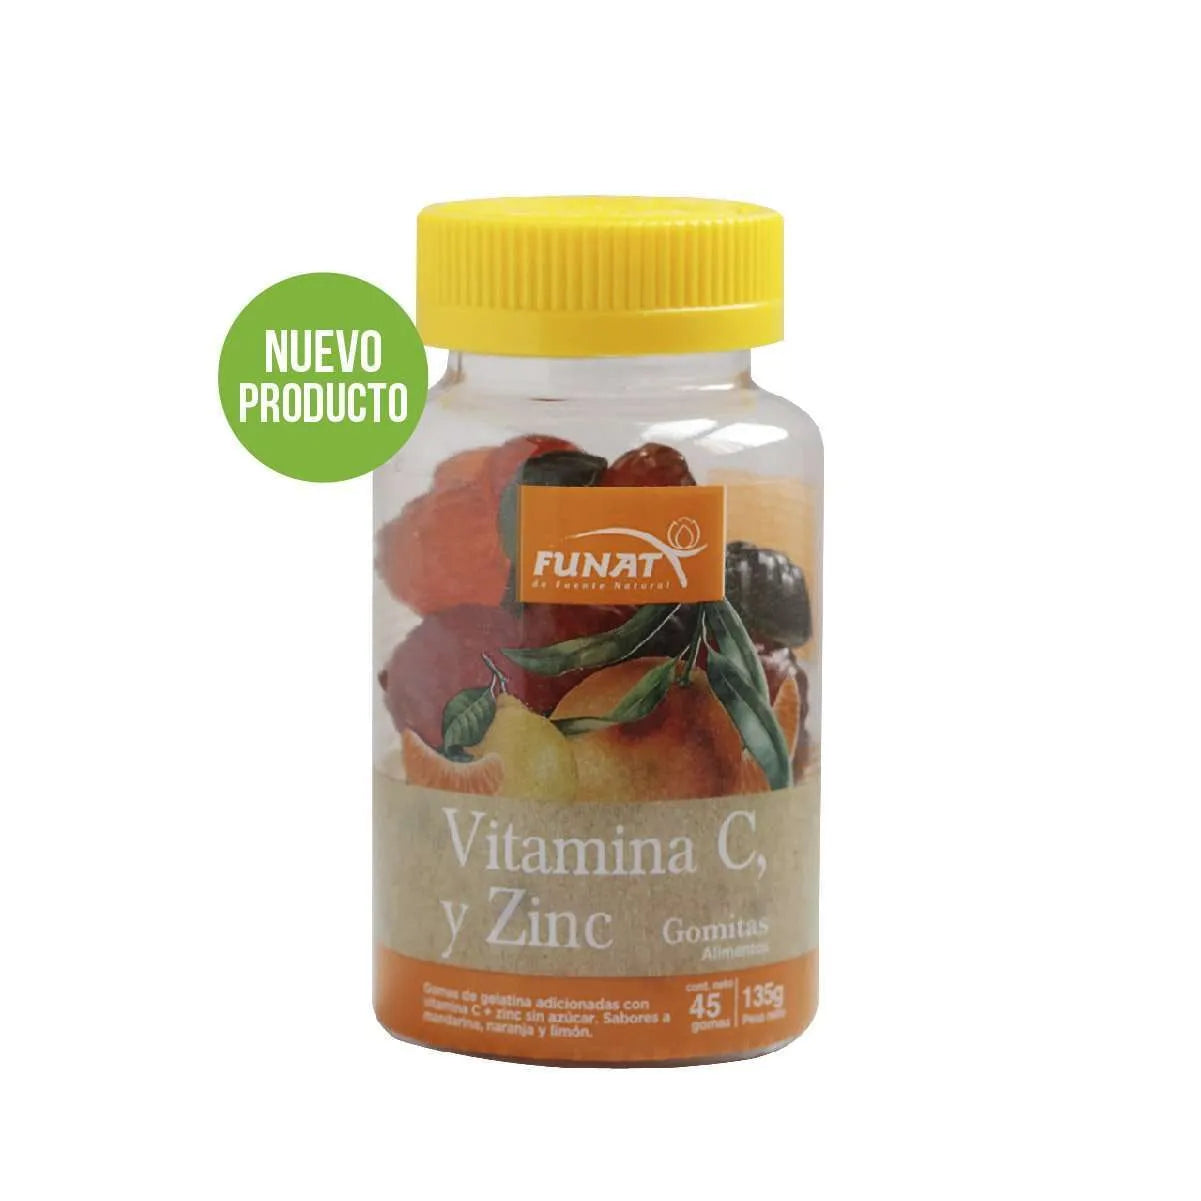 Vitamina C y Zinc gomitas